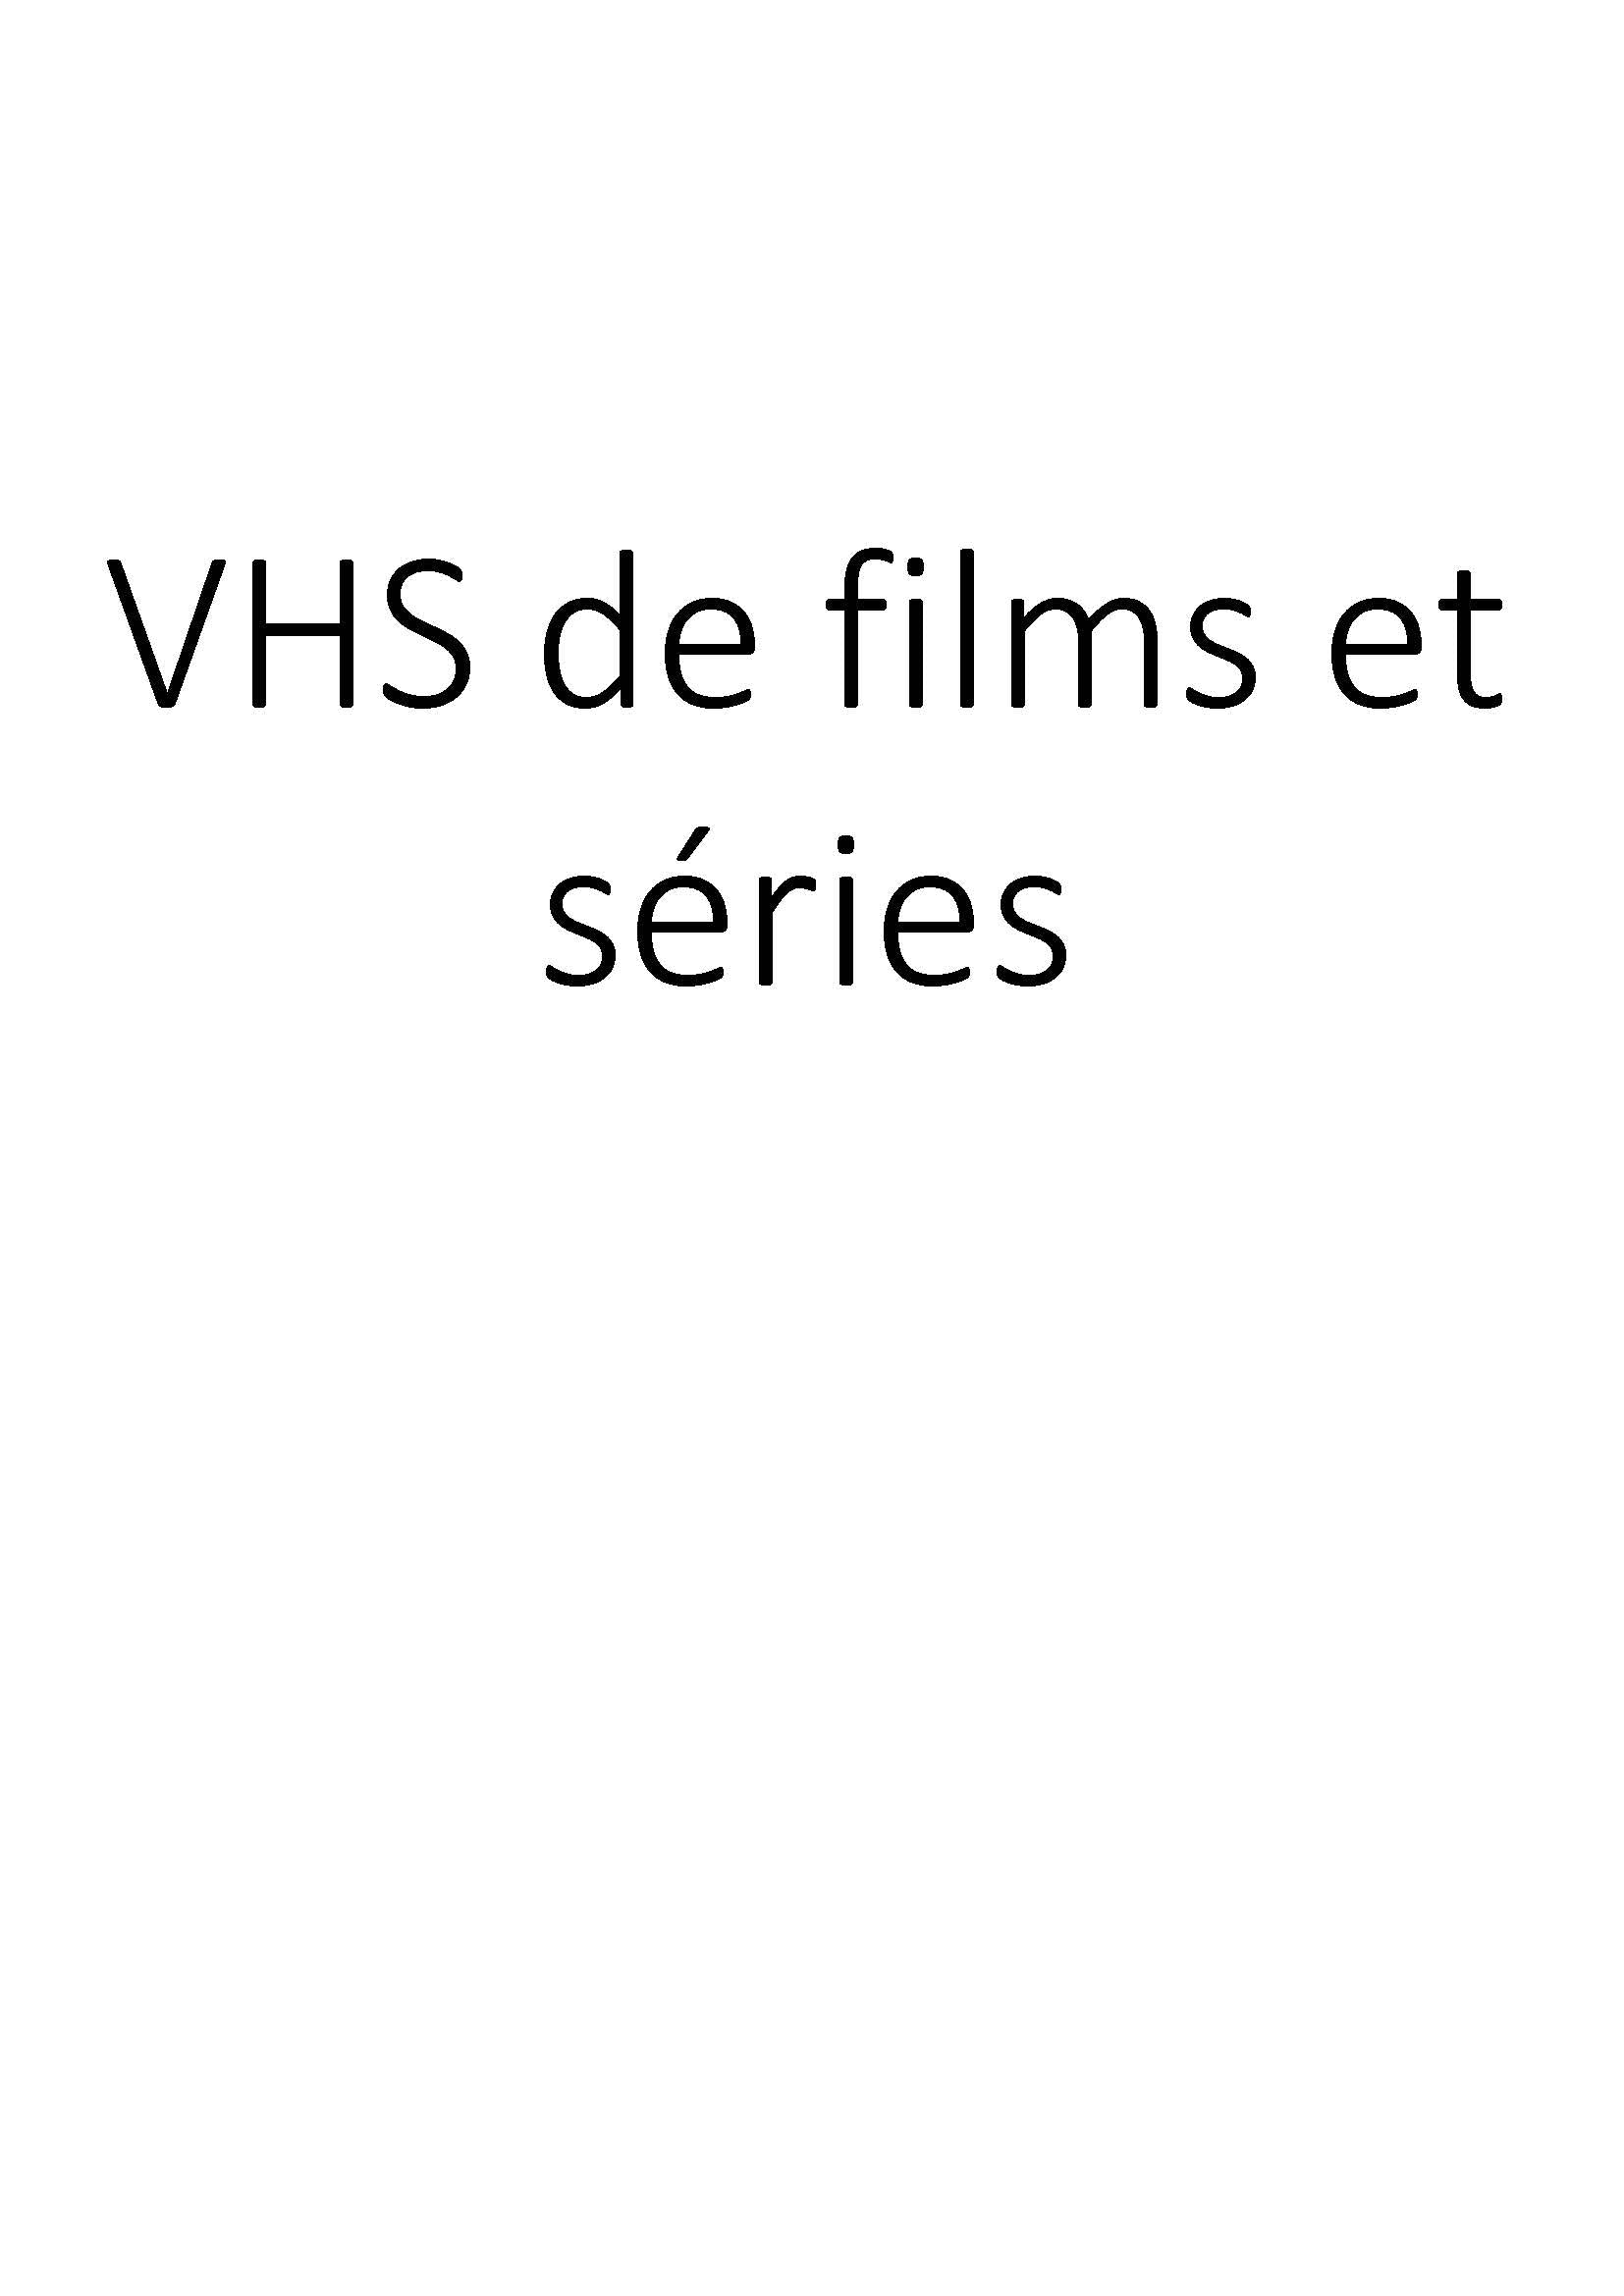 VHS de films et séries clicktofournisseur.com